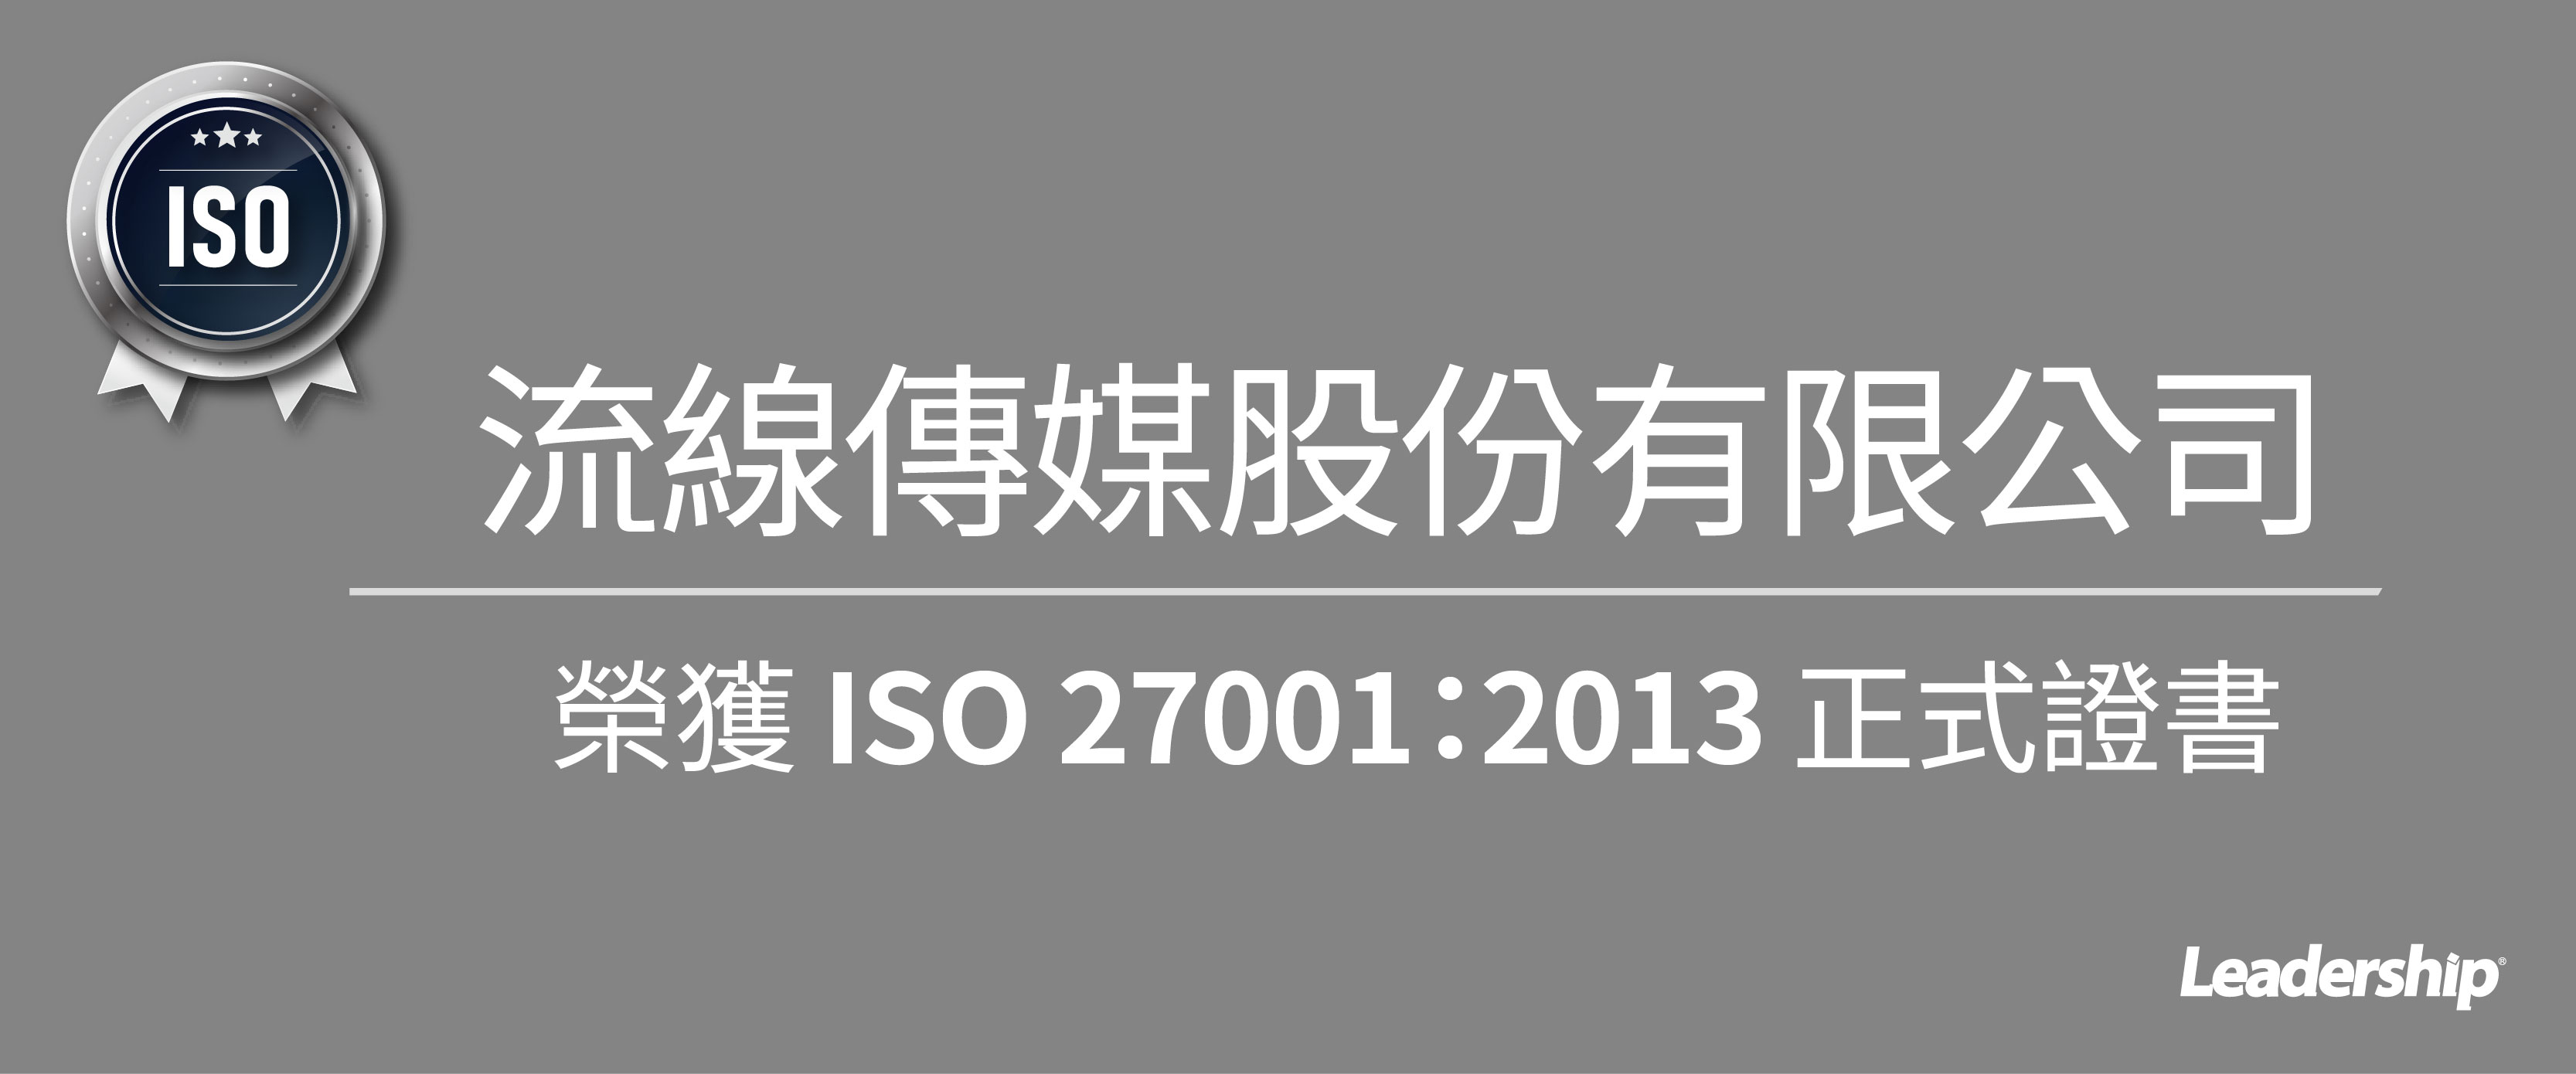 流線傳媒股份有限公司 (報橘) 榮獲 ISO 27001：2013 正式證書